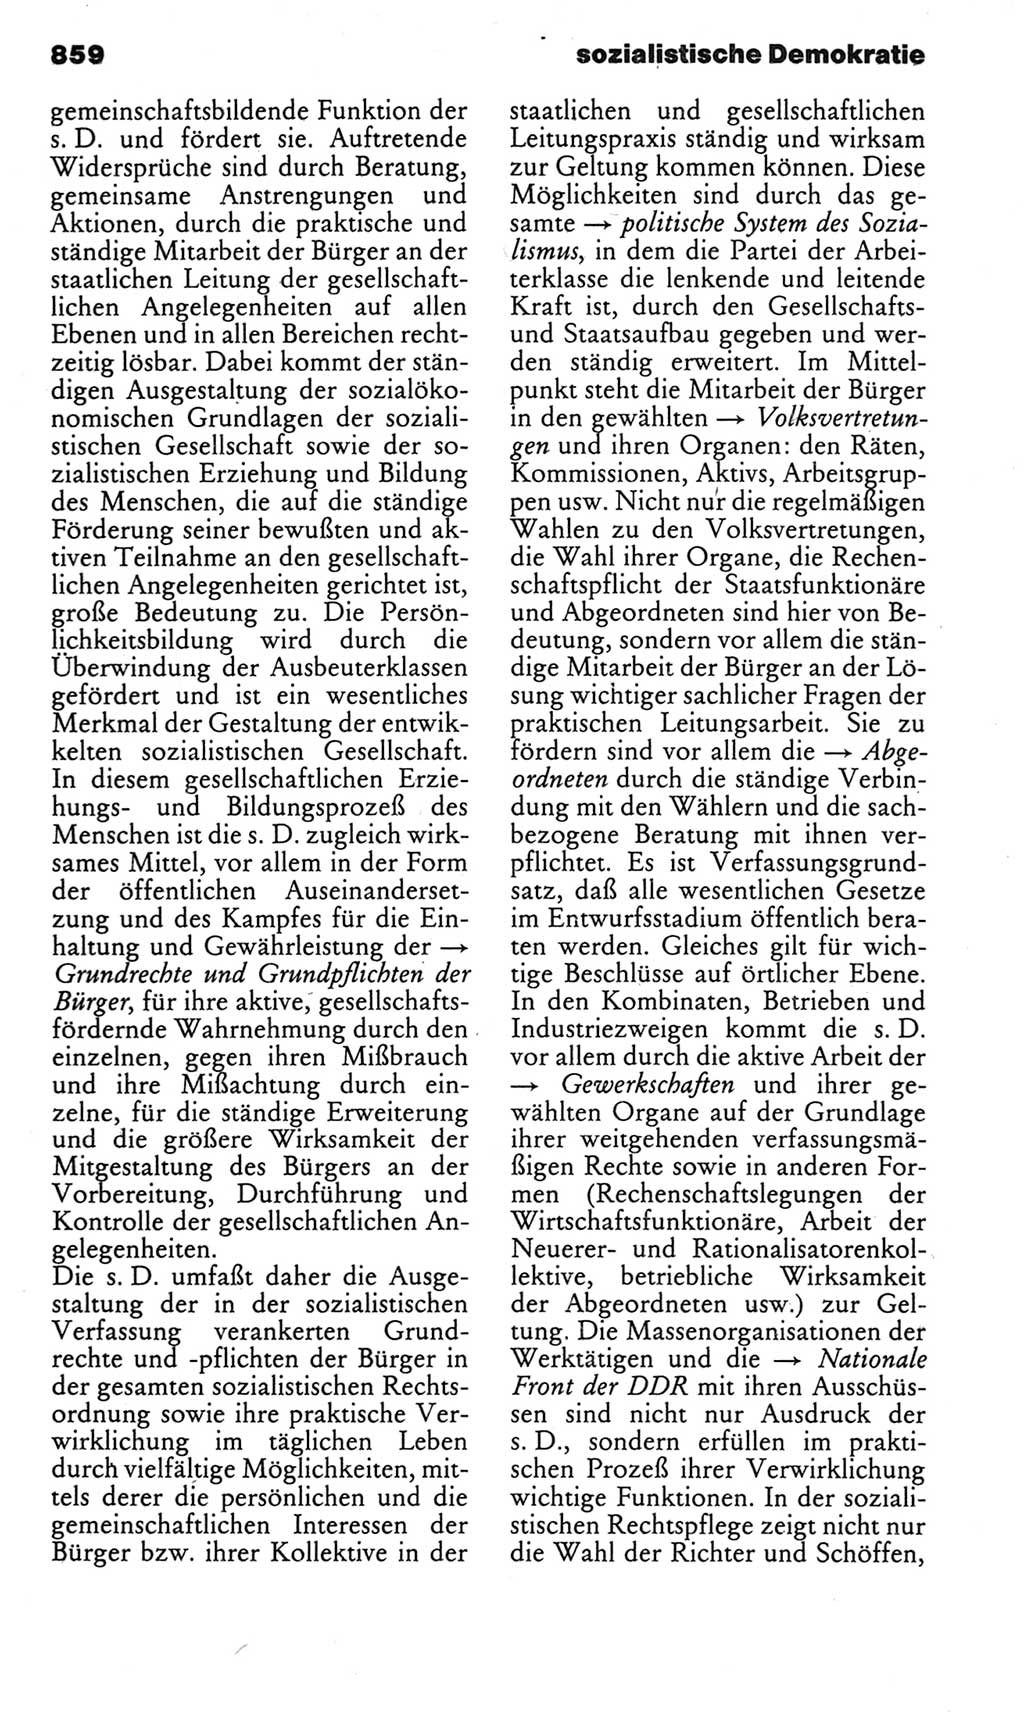 Kleines politisches Wörterbuch [Deutsche Demokratische Republik (DDR)] 1983, Seite 859 (Kl. pol. Wb. DDR 1983, S. 859)